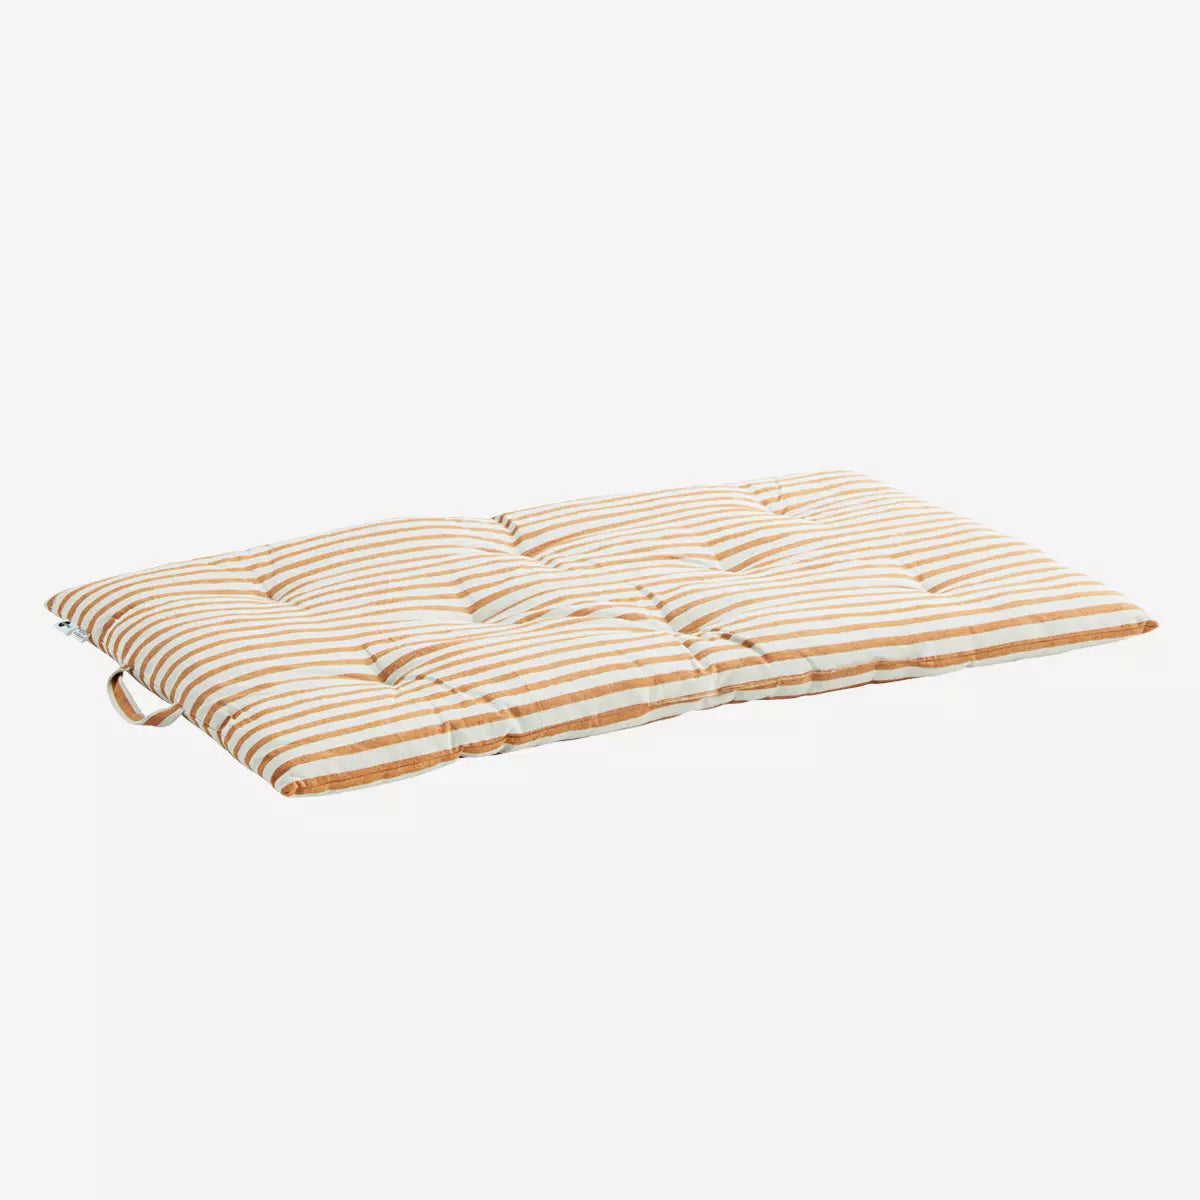 Striped Cotton Mattress in Off White & Dark Honey By Madam Stoltz